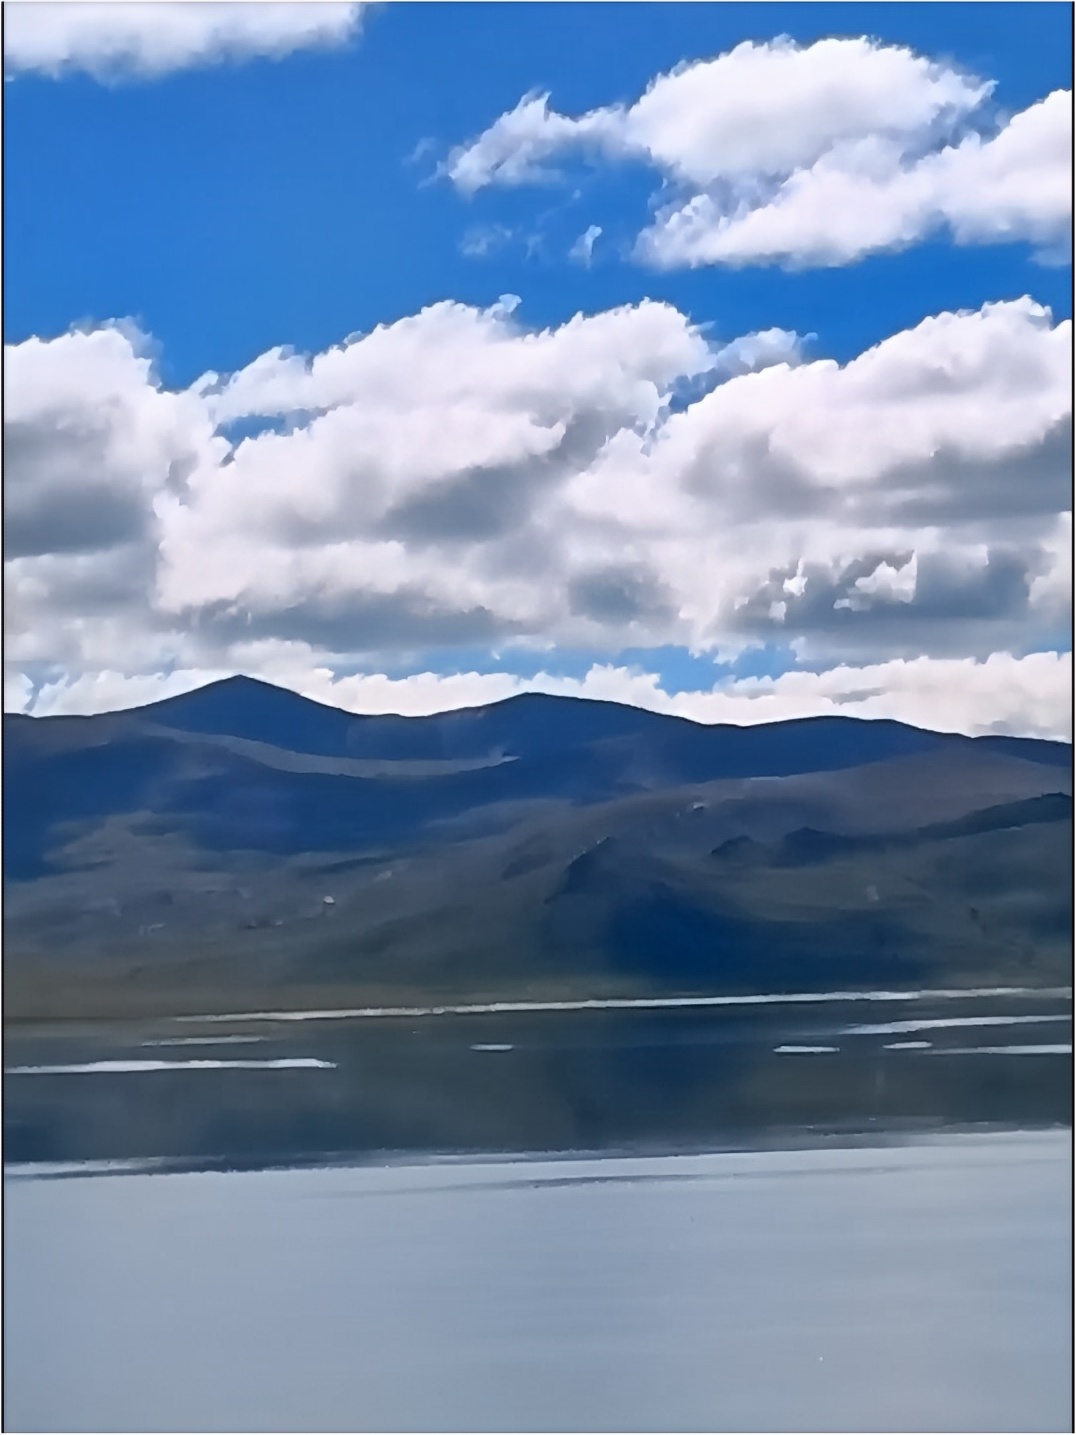 记录我的旅行足迹自驾219之旅哲古措湖三#我的旅行日记 #旅途回忆 #沿途风景随拍